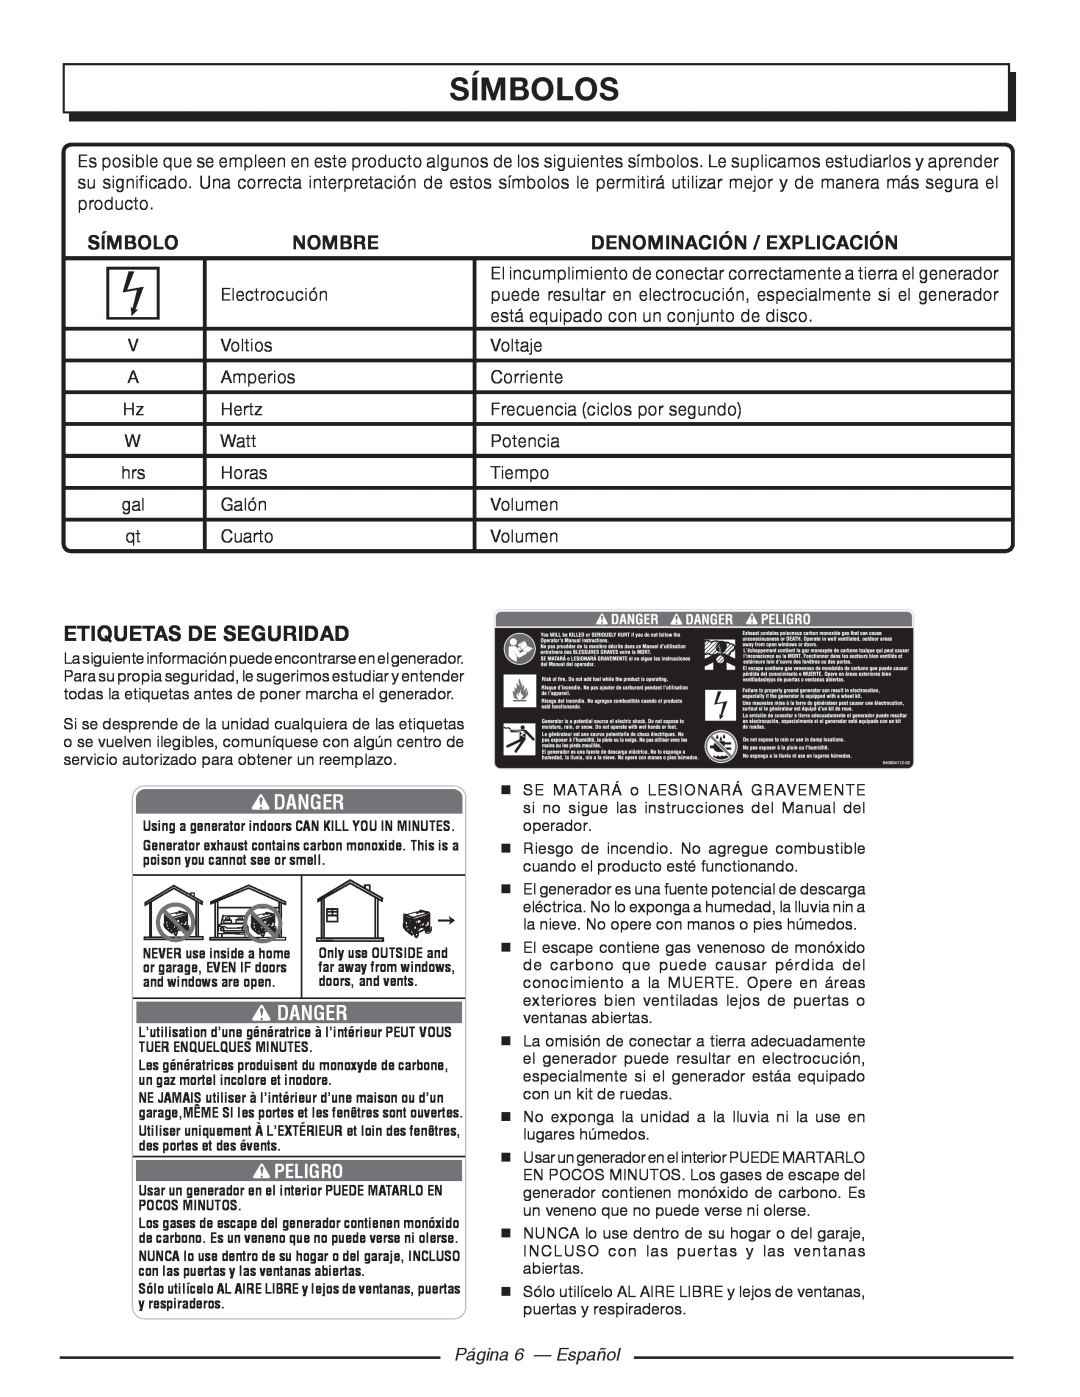 Homelite HGCA5700 Etiquetas De Seguridad, Danger, Página 6 — Español, Símbolos, Nombre, Denominación / Explicación 